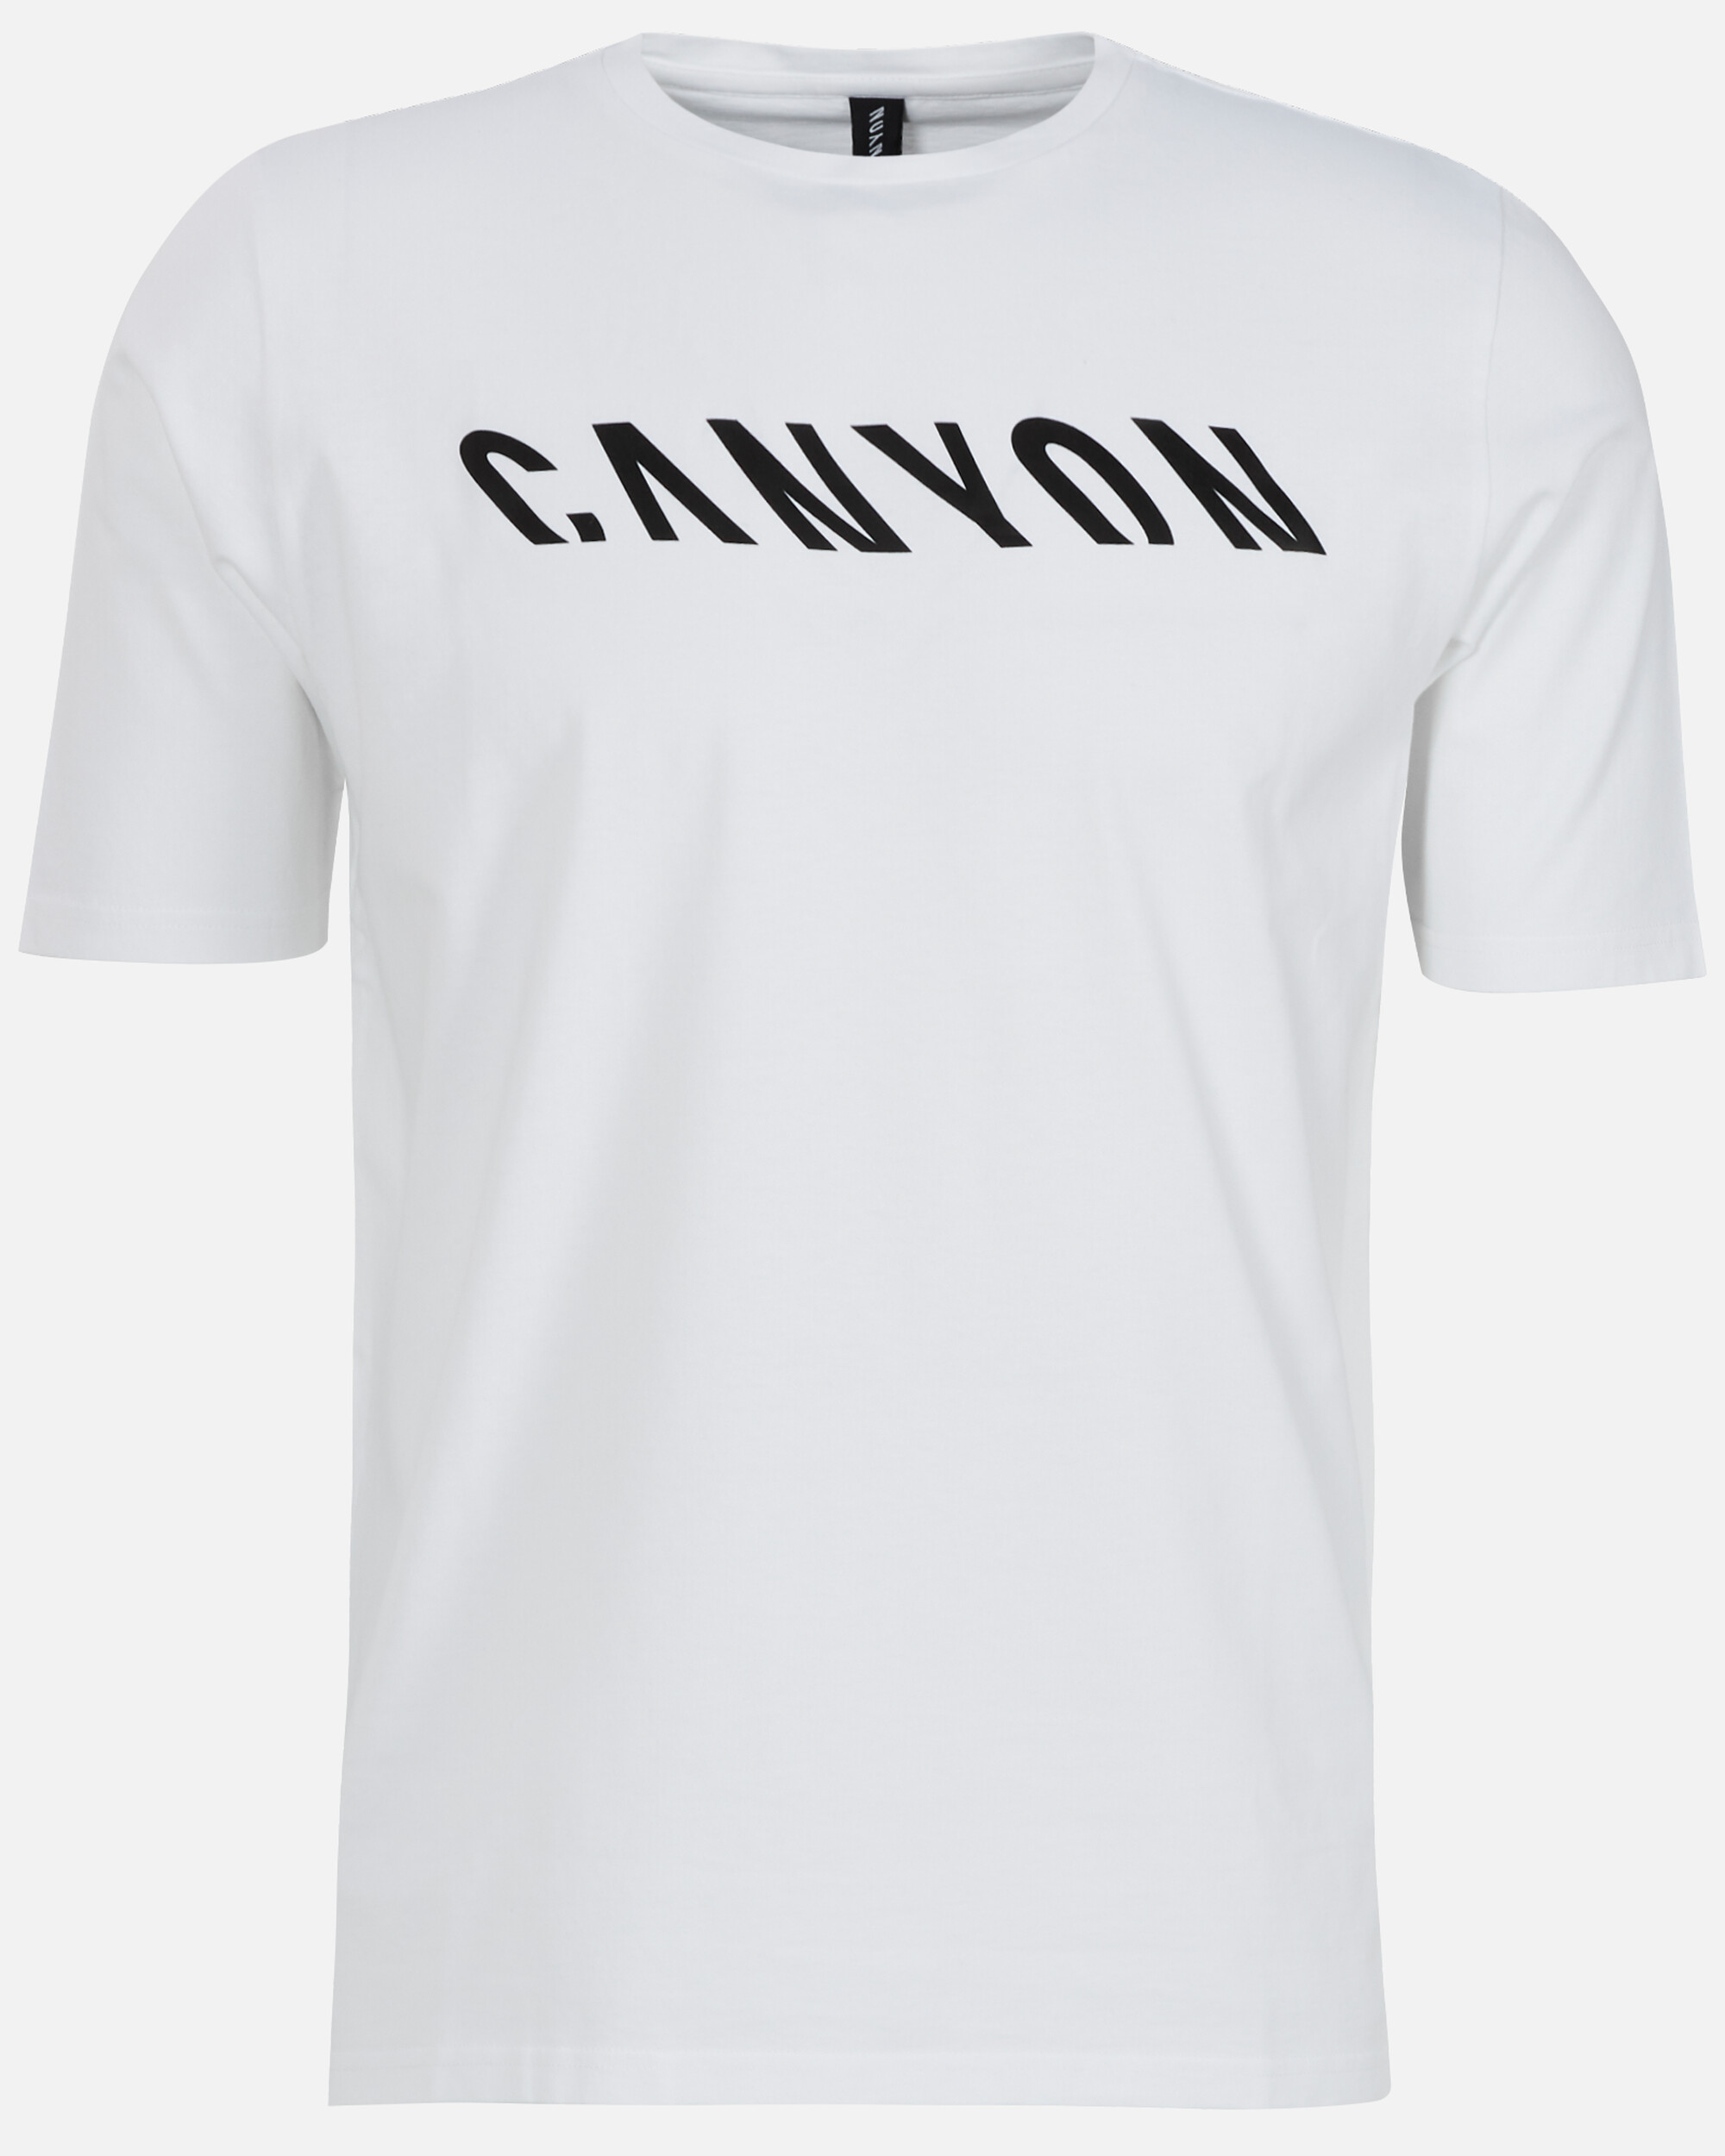 Футболка Canyon Bicycles Regular Fit Organic Cotton, белый зарядное устройство canyon canyon белый